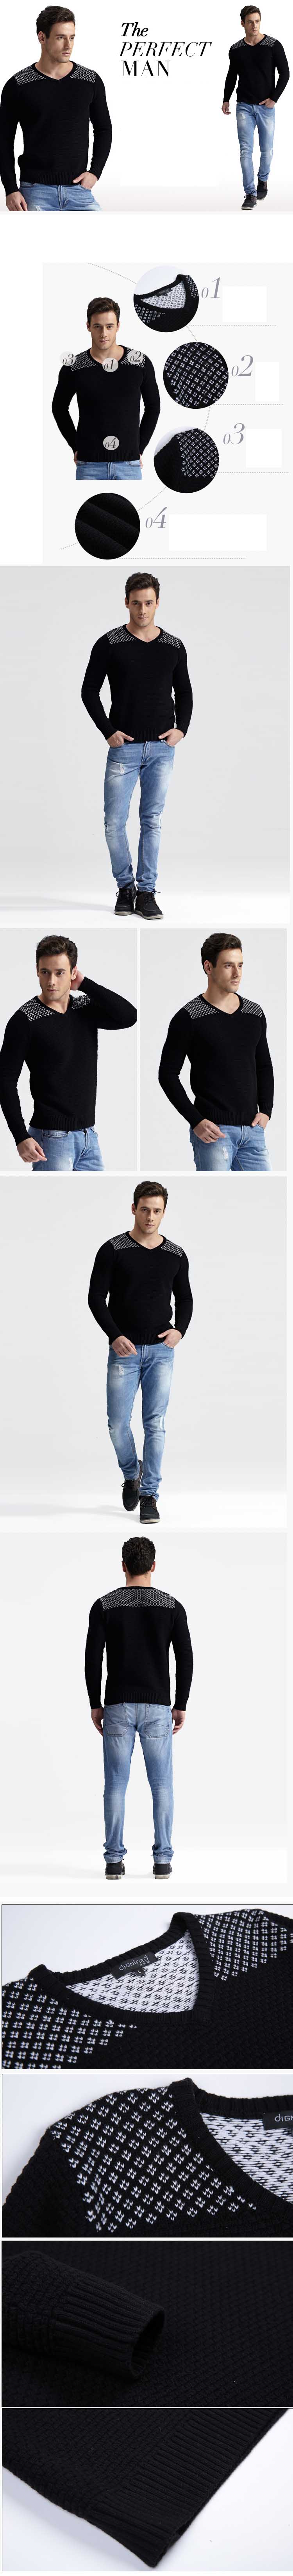 jual sweater pria model vneck, terbuat dari bahan rajut berkualitas import sehingga nyaman dipakai, temukan koleksi sweater pria import terlengkap disini